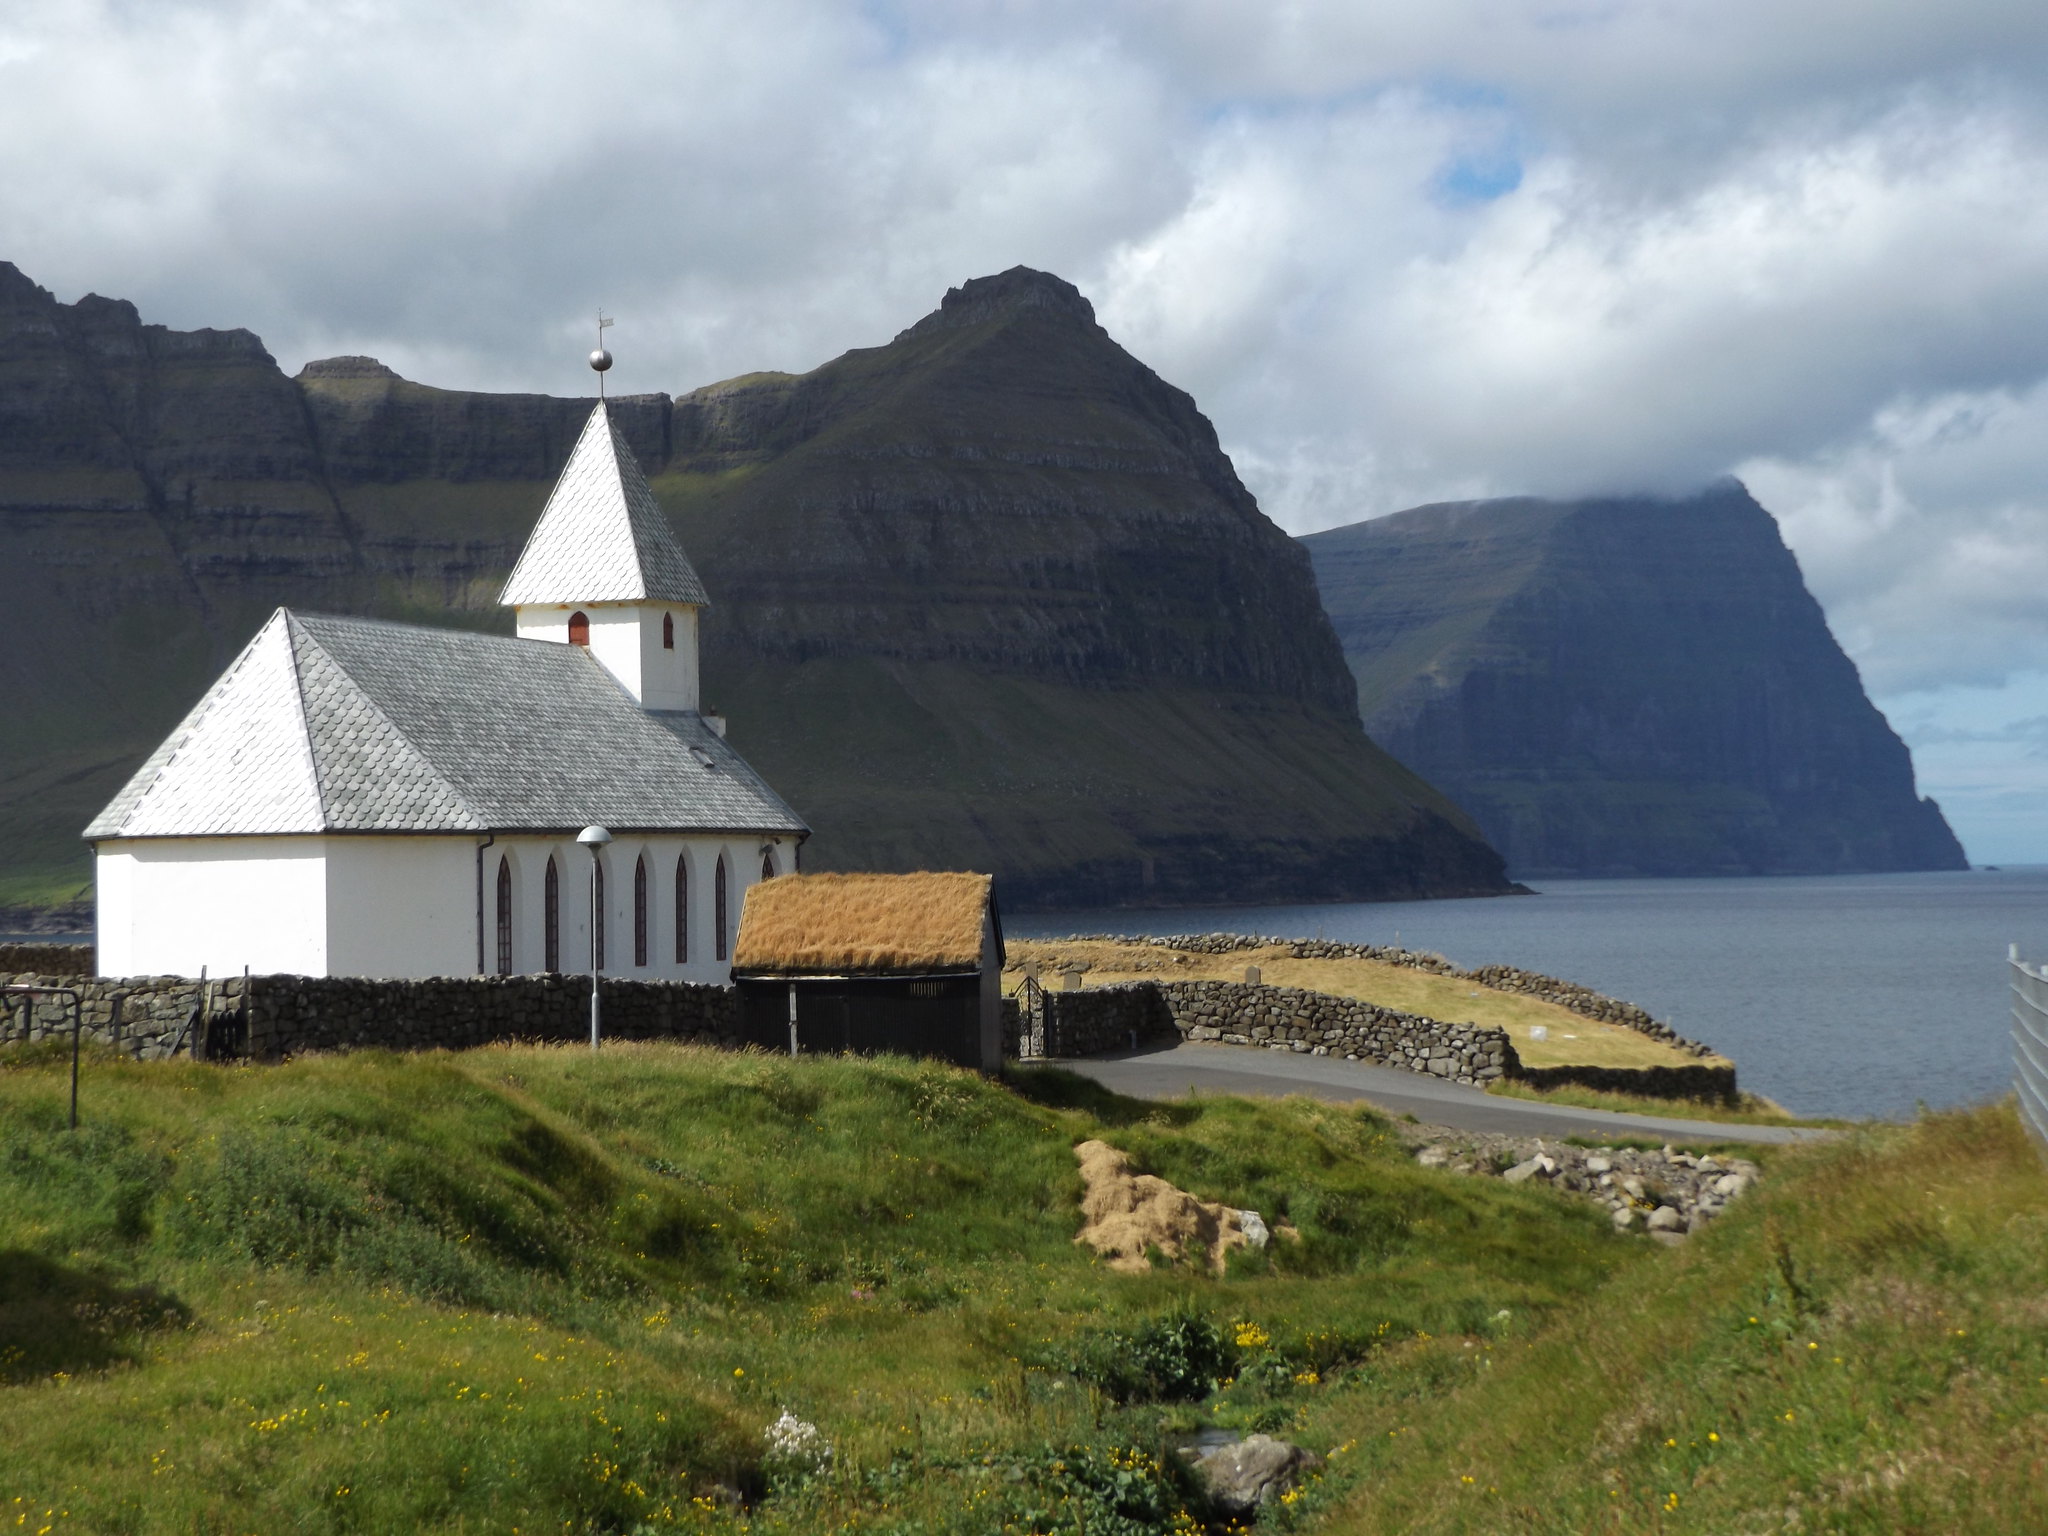 Viðareiði Church, Viðoy, Faroe Islands, 16 July 2018